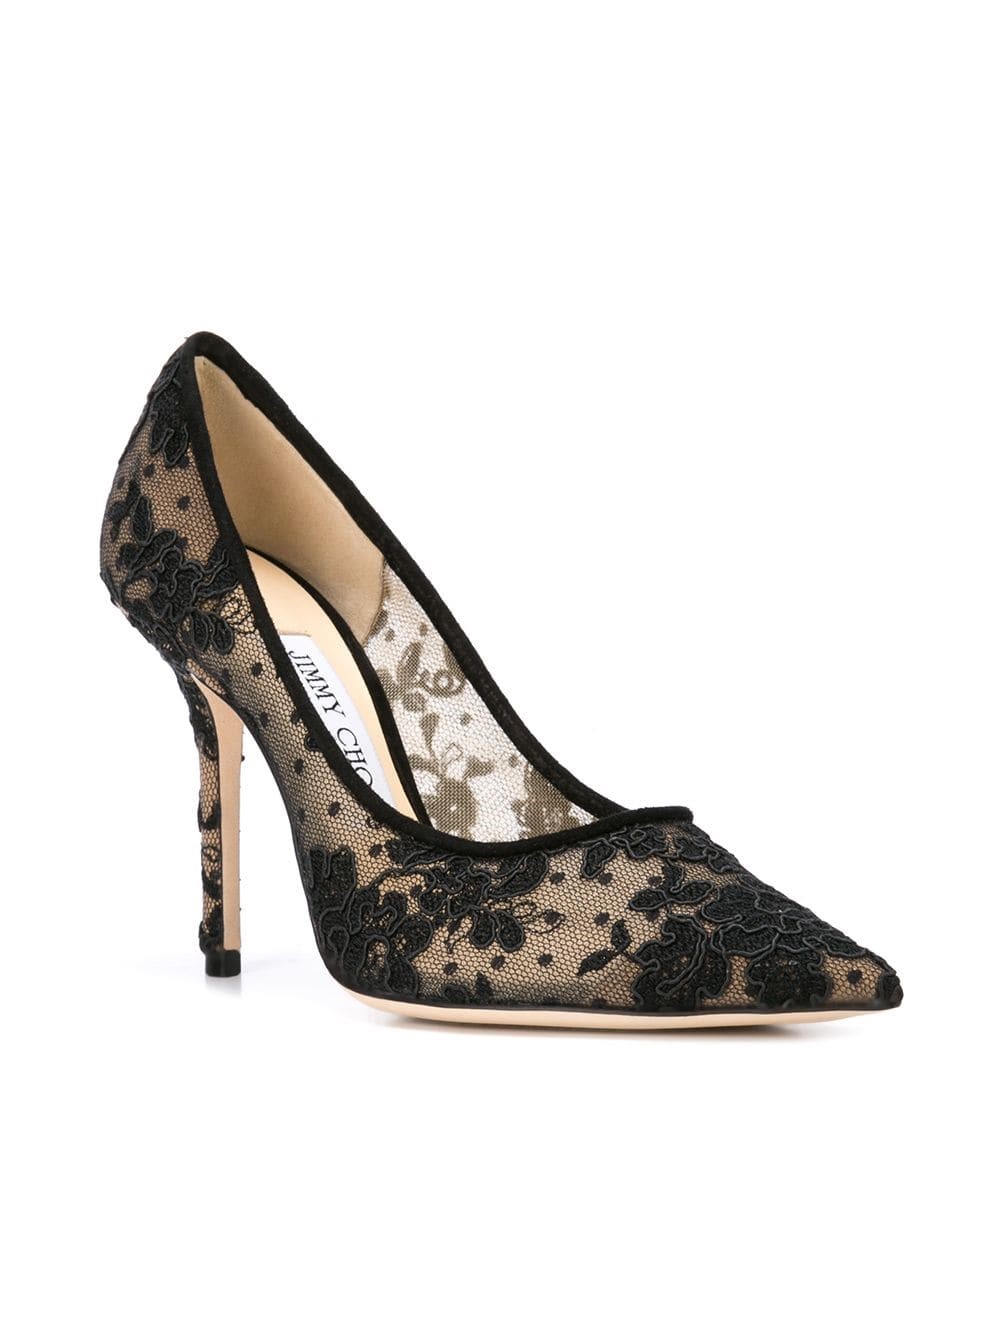 Buy > jimmy choo floral heels > in stock